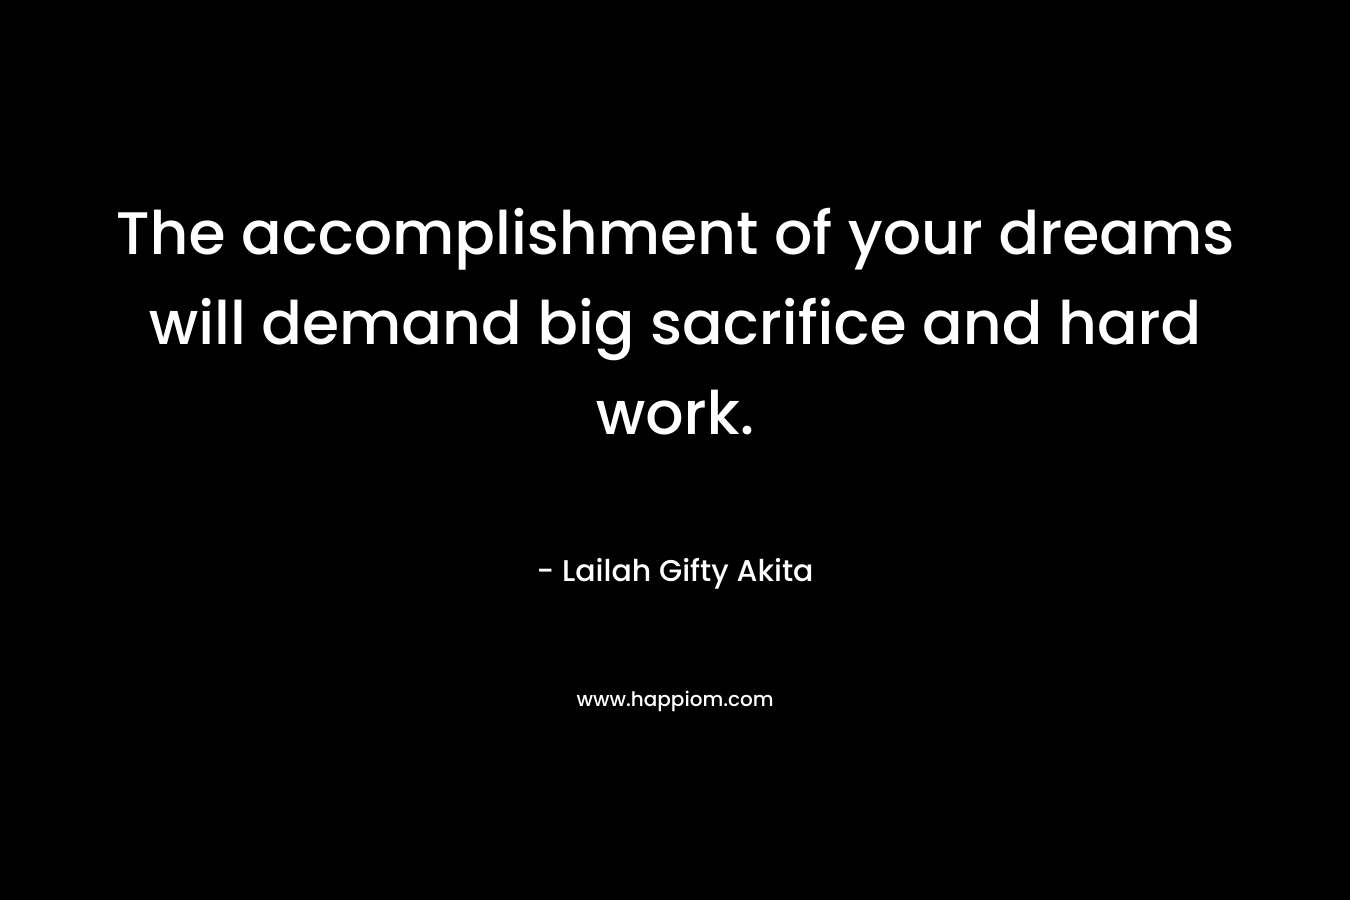 The accomplishment of your dreams will demand big sacrifice and hard work. – Lailah Gifty Akita